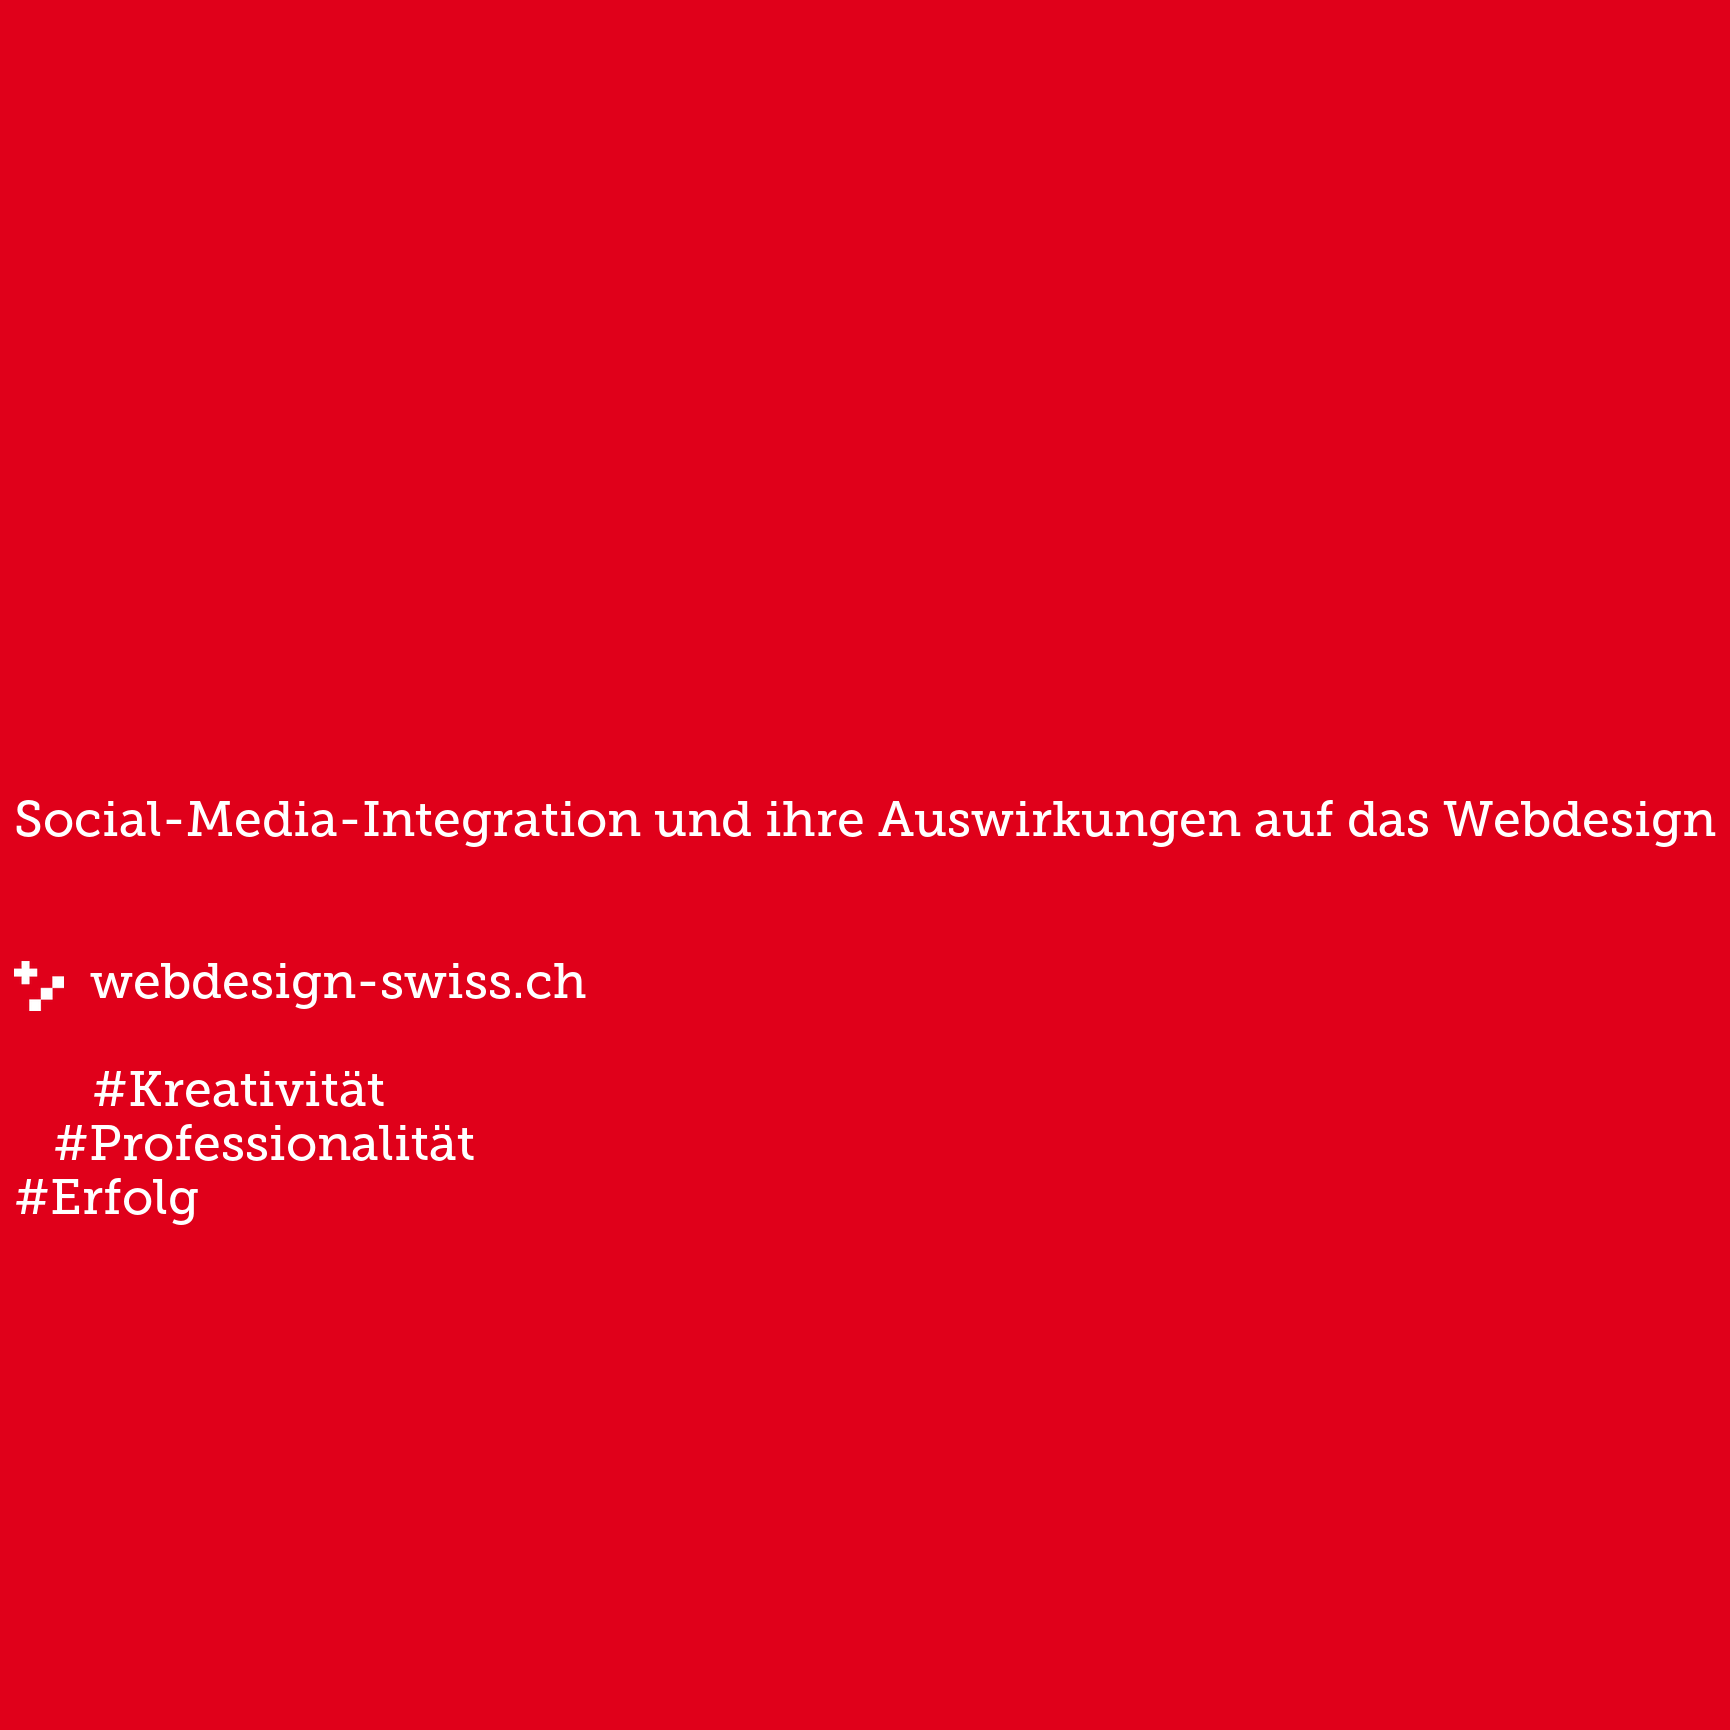 Social-Media-Integration und ihre Auswirkungen auf das Webdesign